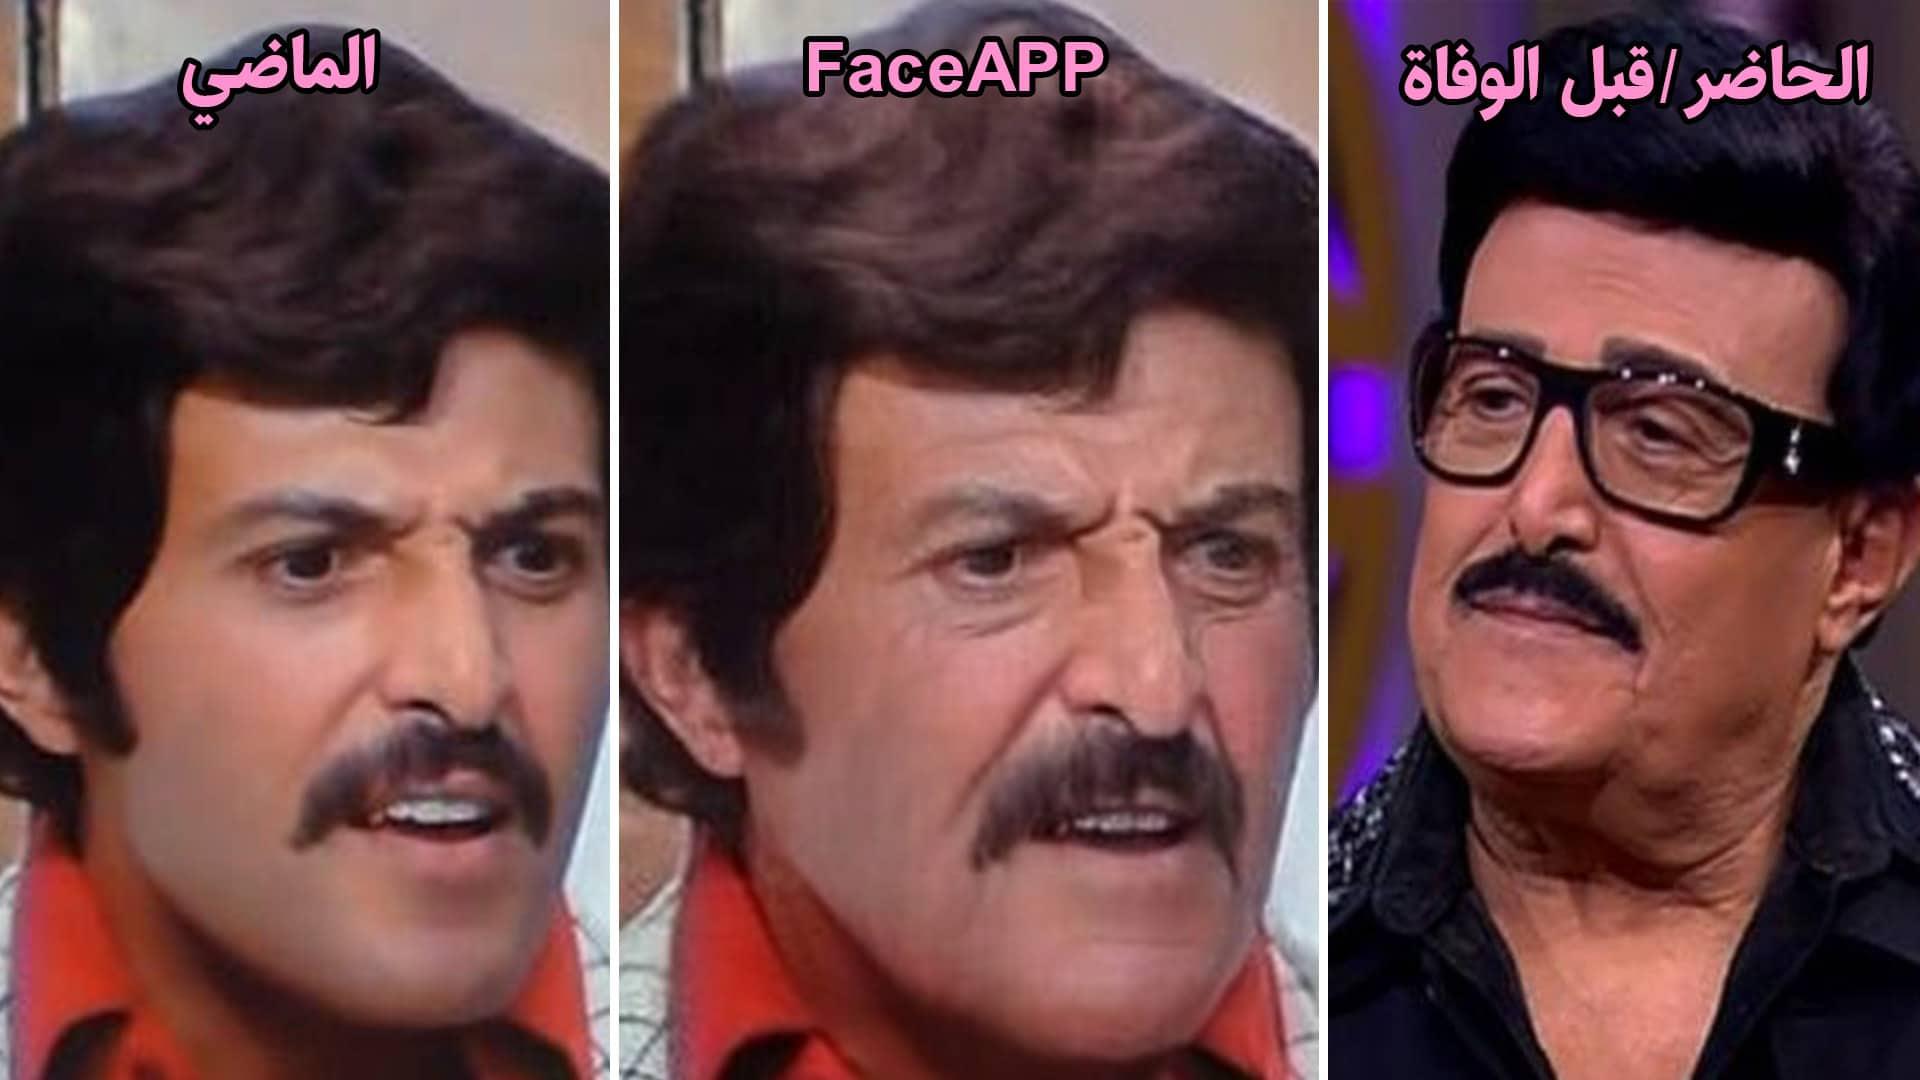 سمير غانم - face app